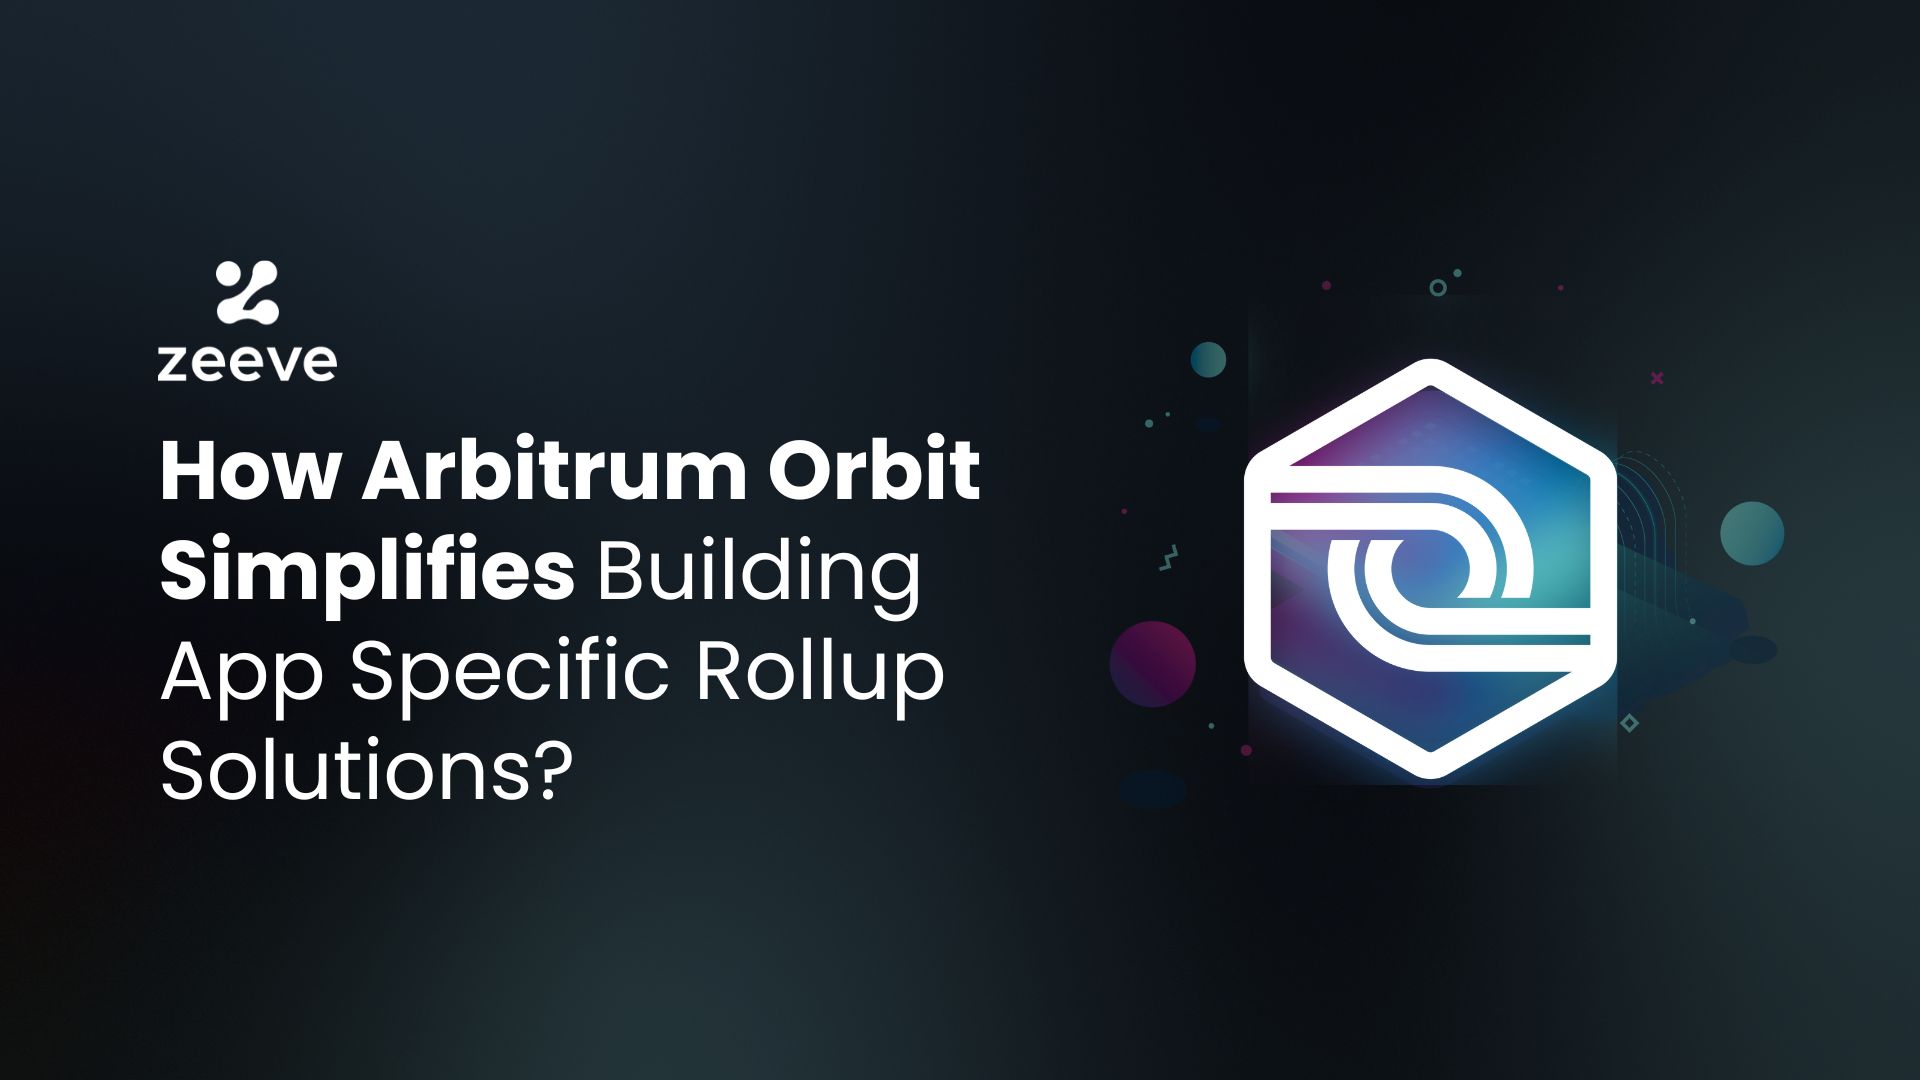 Arbitrum Orbit for Rollups